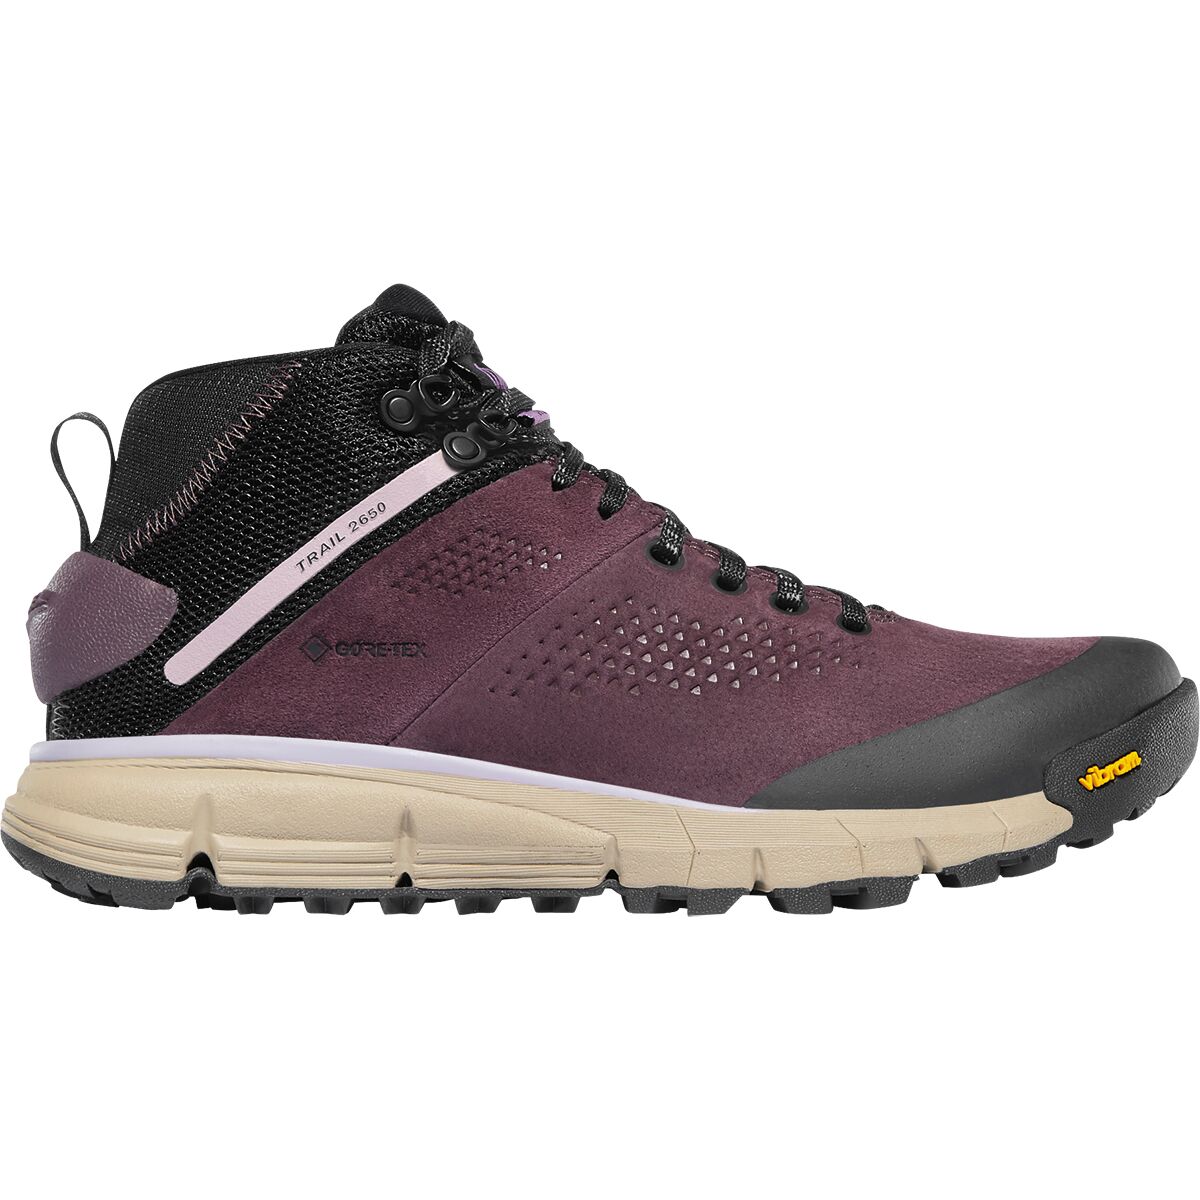 Trail 2650 GTX Mid Hiking Boot - Women